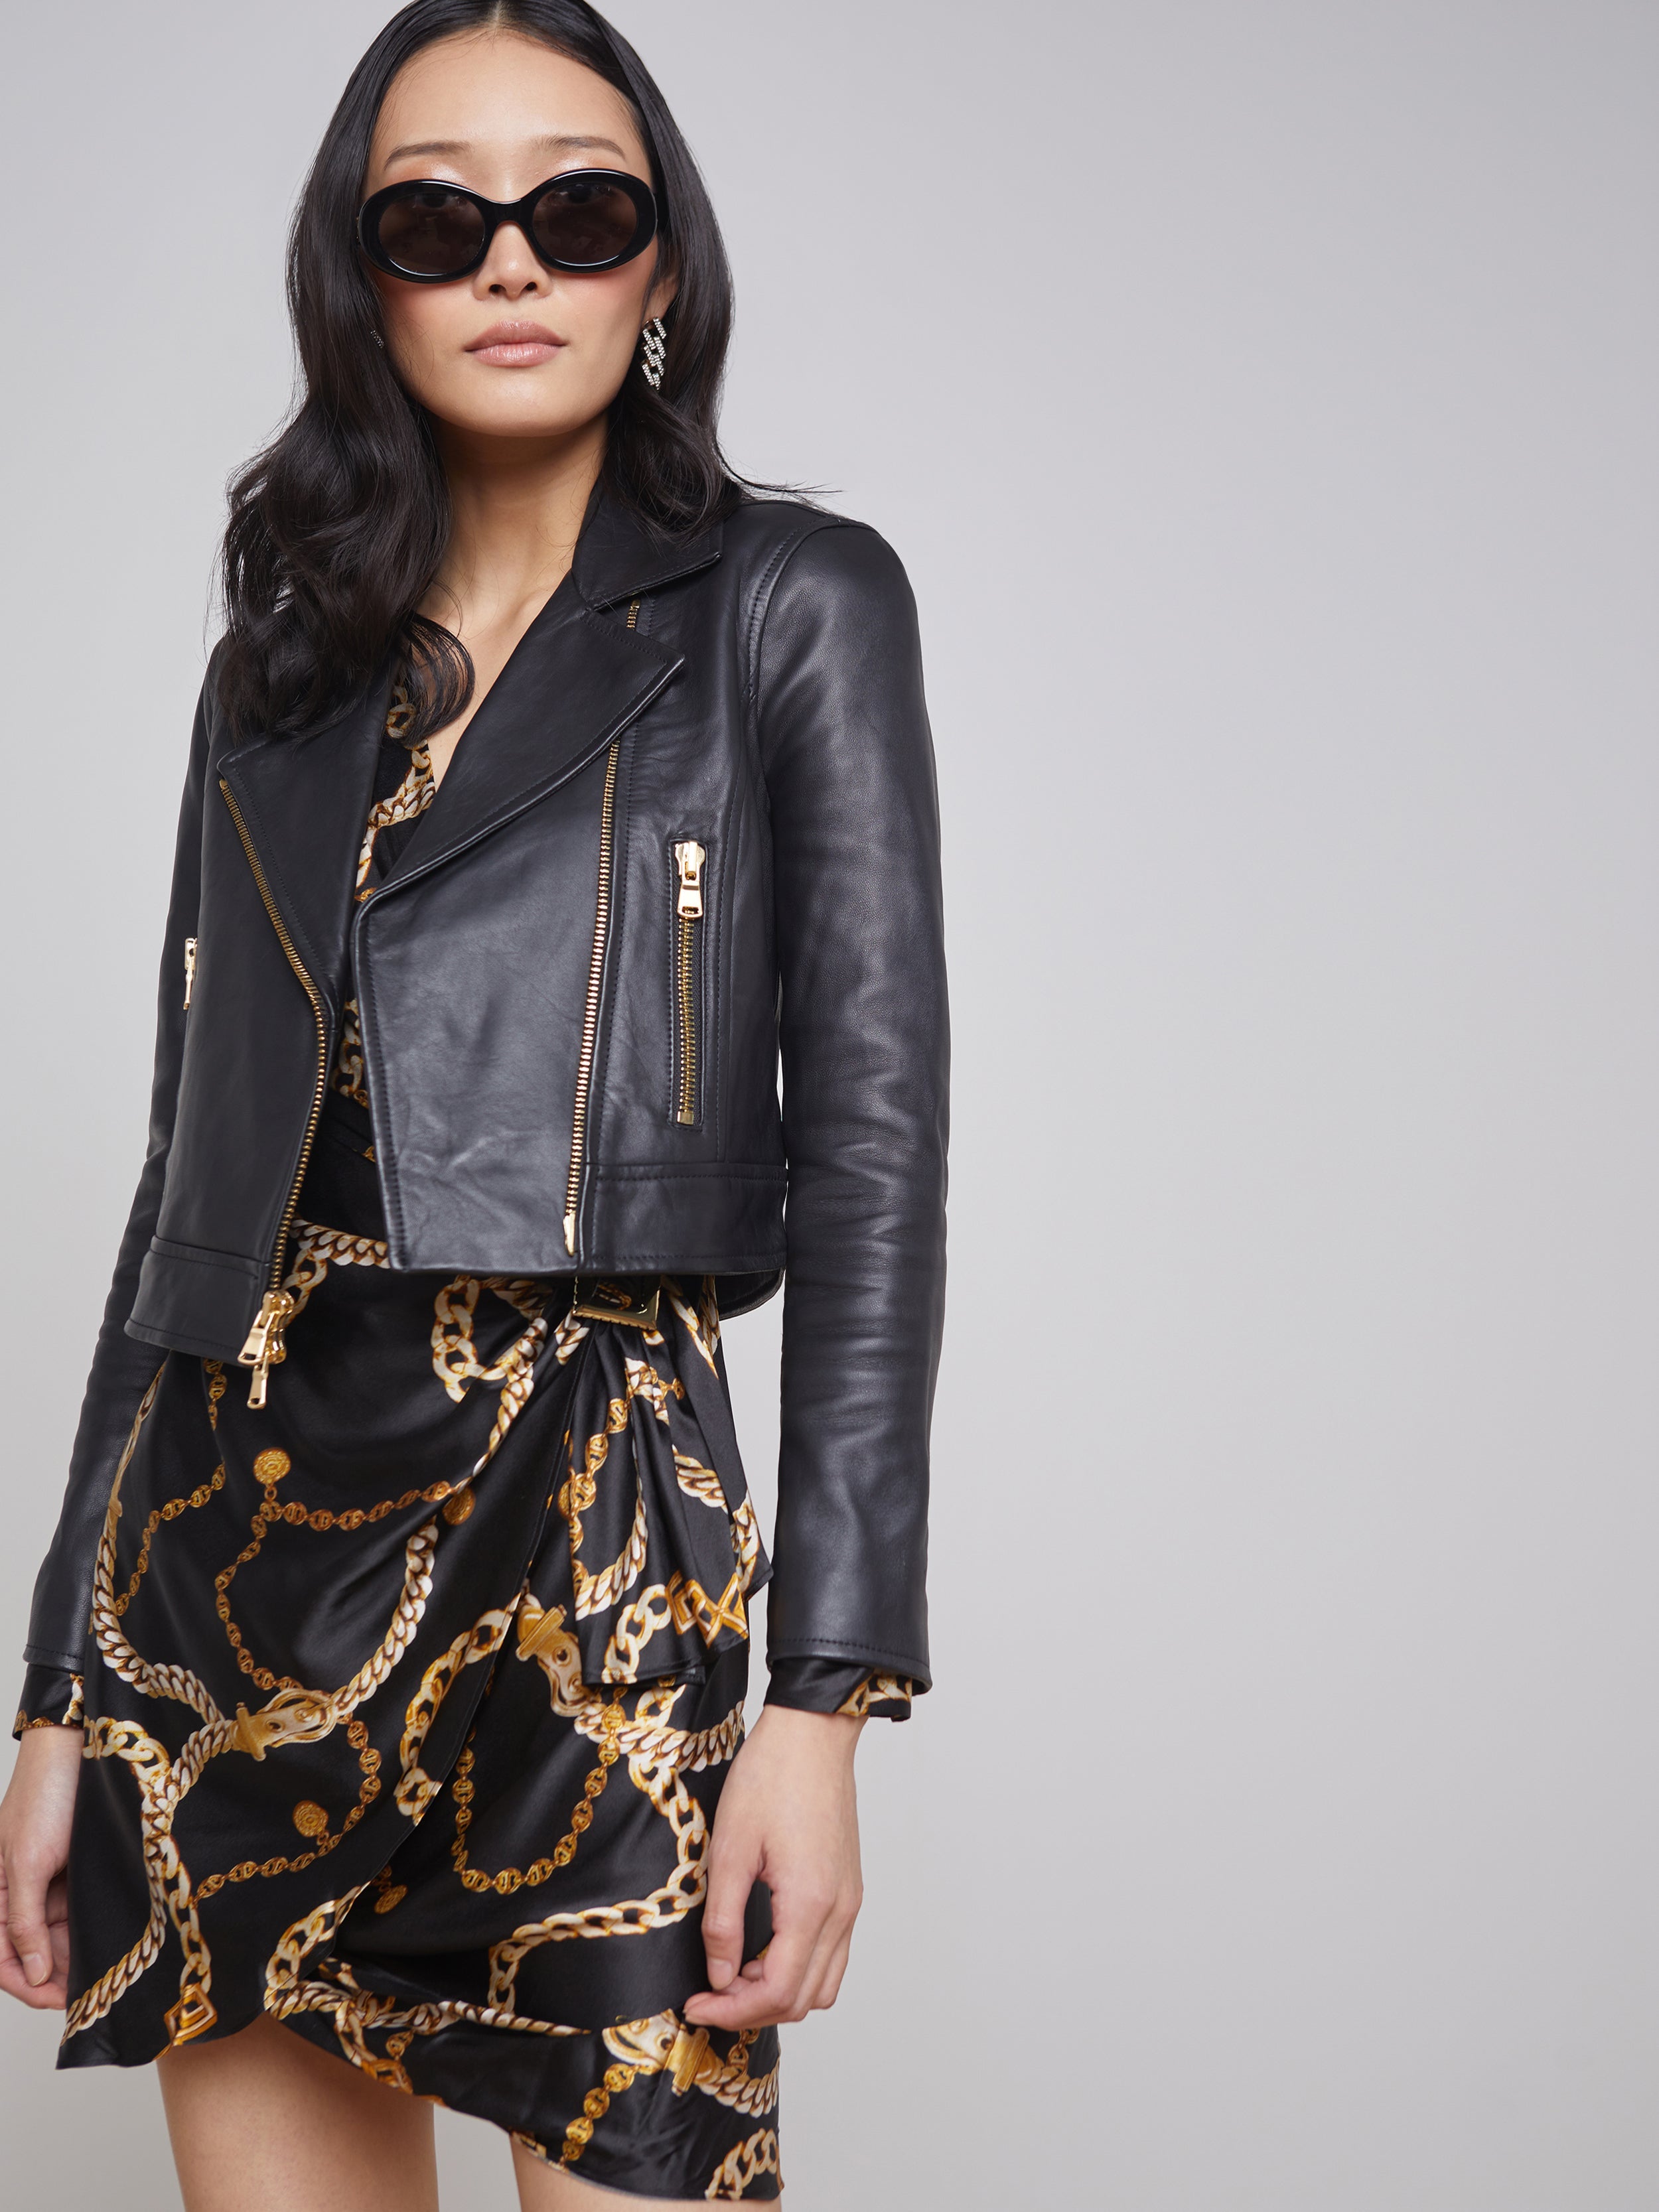 Onna Leather Jacket Black - L'AGENCE – Jackie Z Style Co.